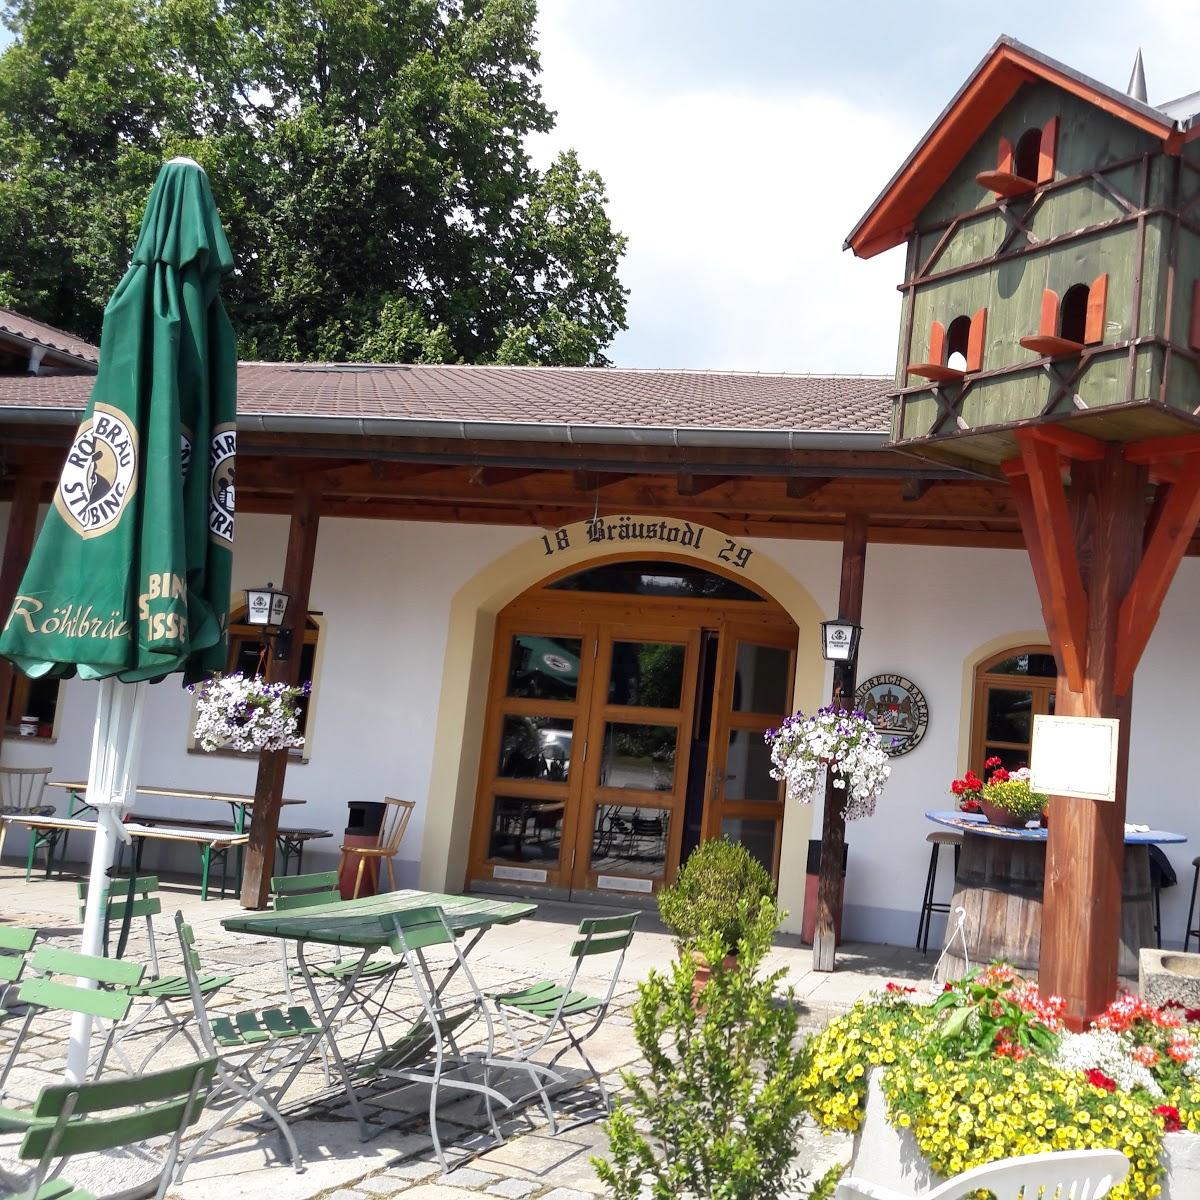 Restaurant "Schlossgaststätte Laumer" in  Miltach